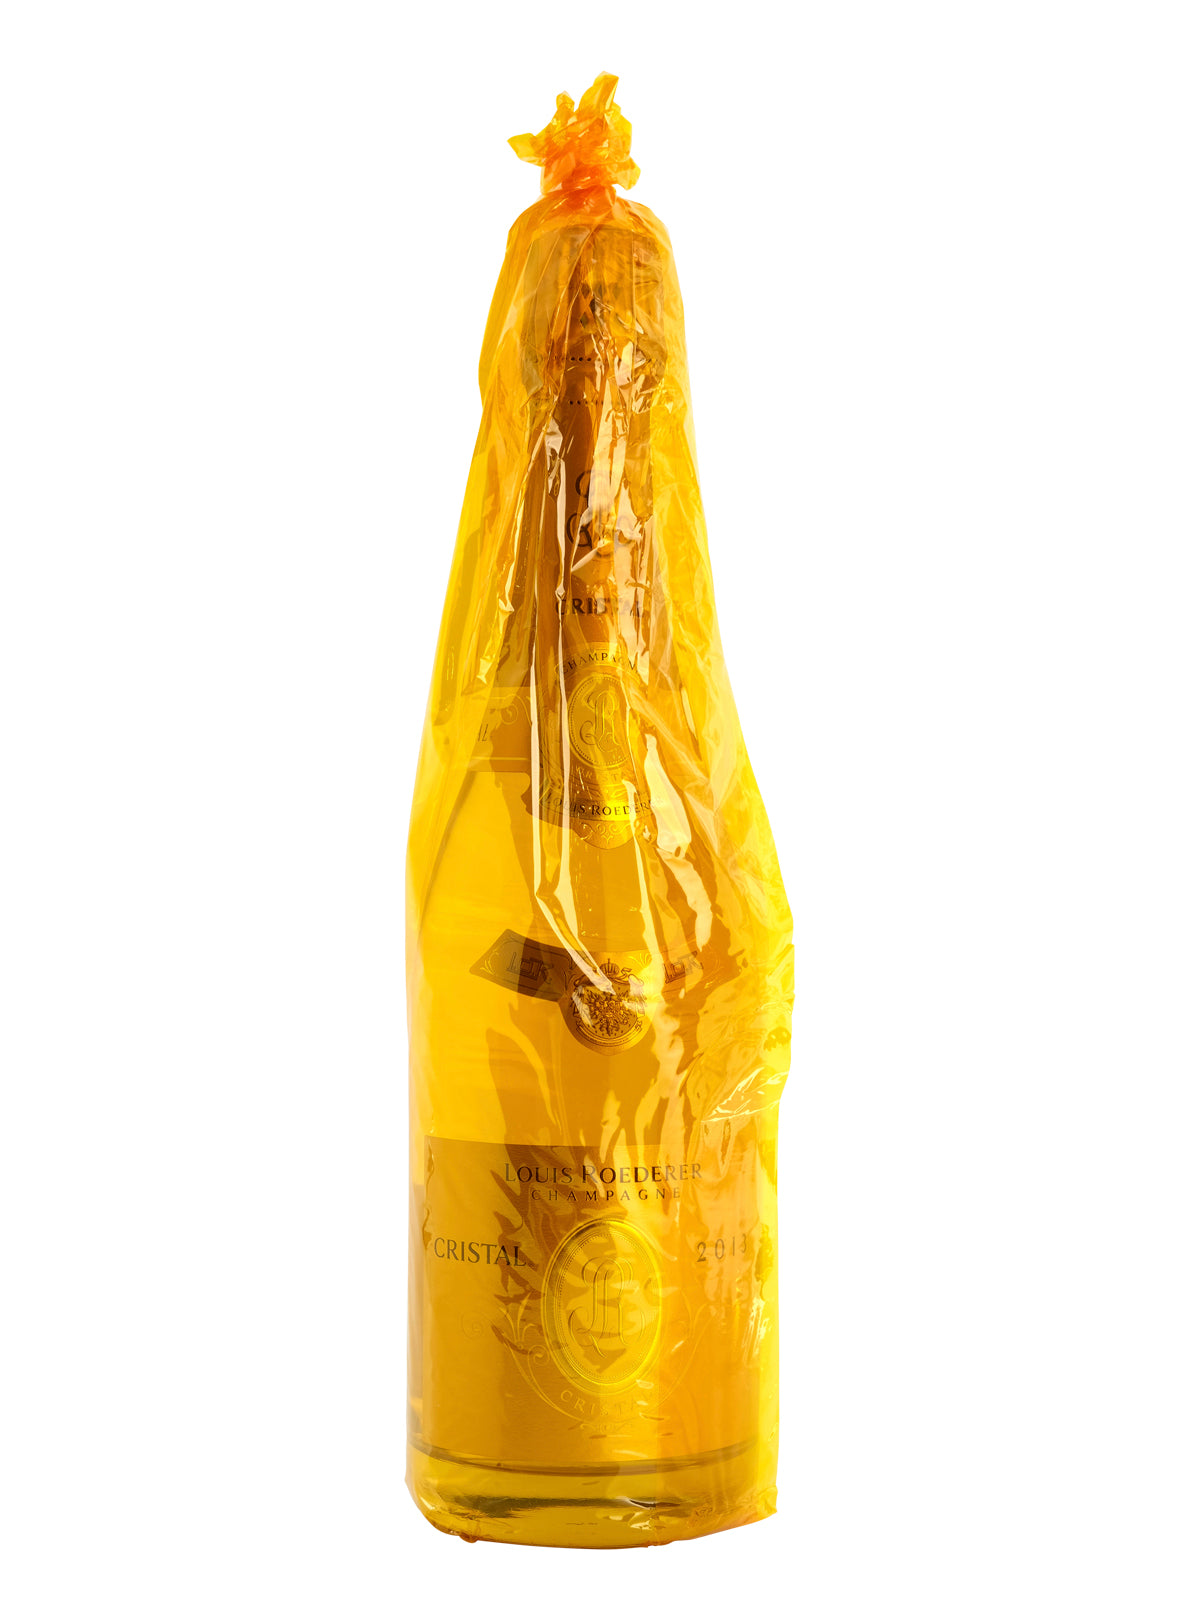 Louis Roederer Cristal Millesime Brut, Champagne, France